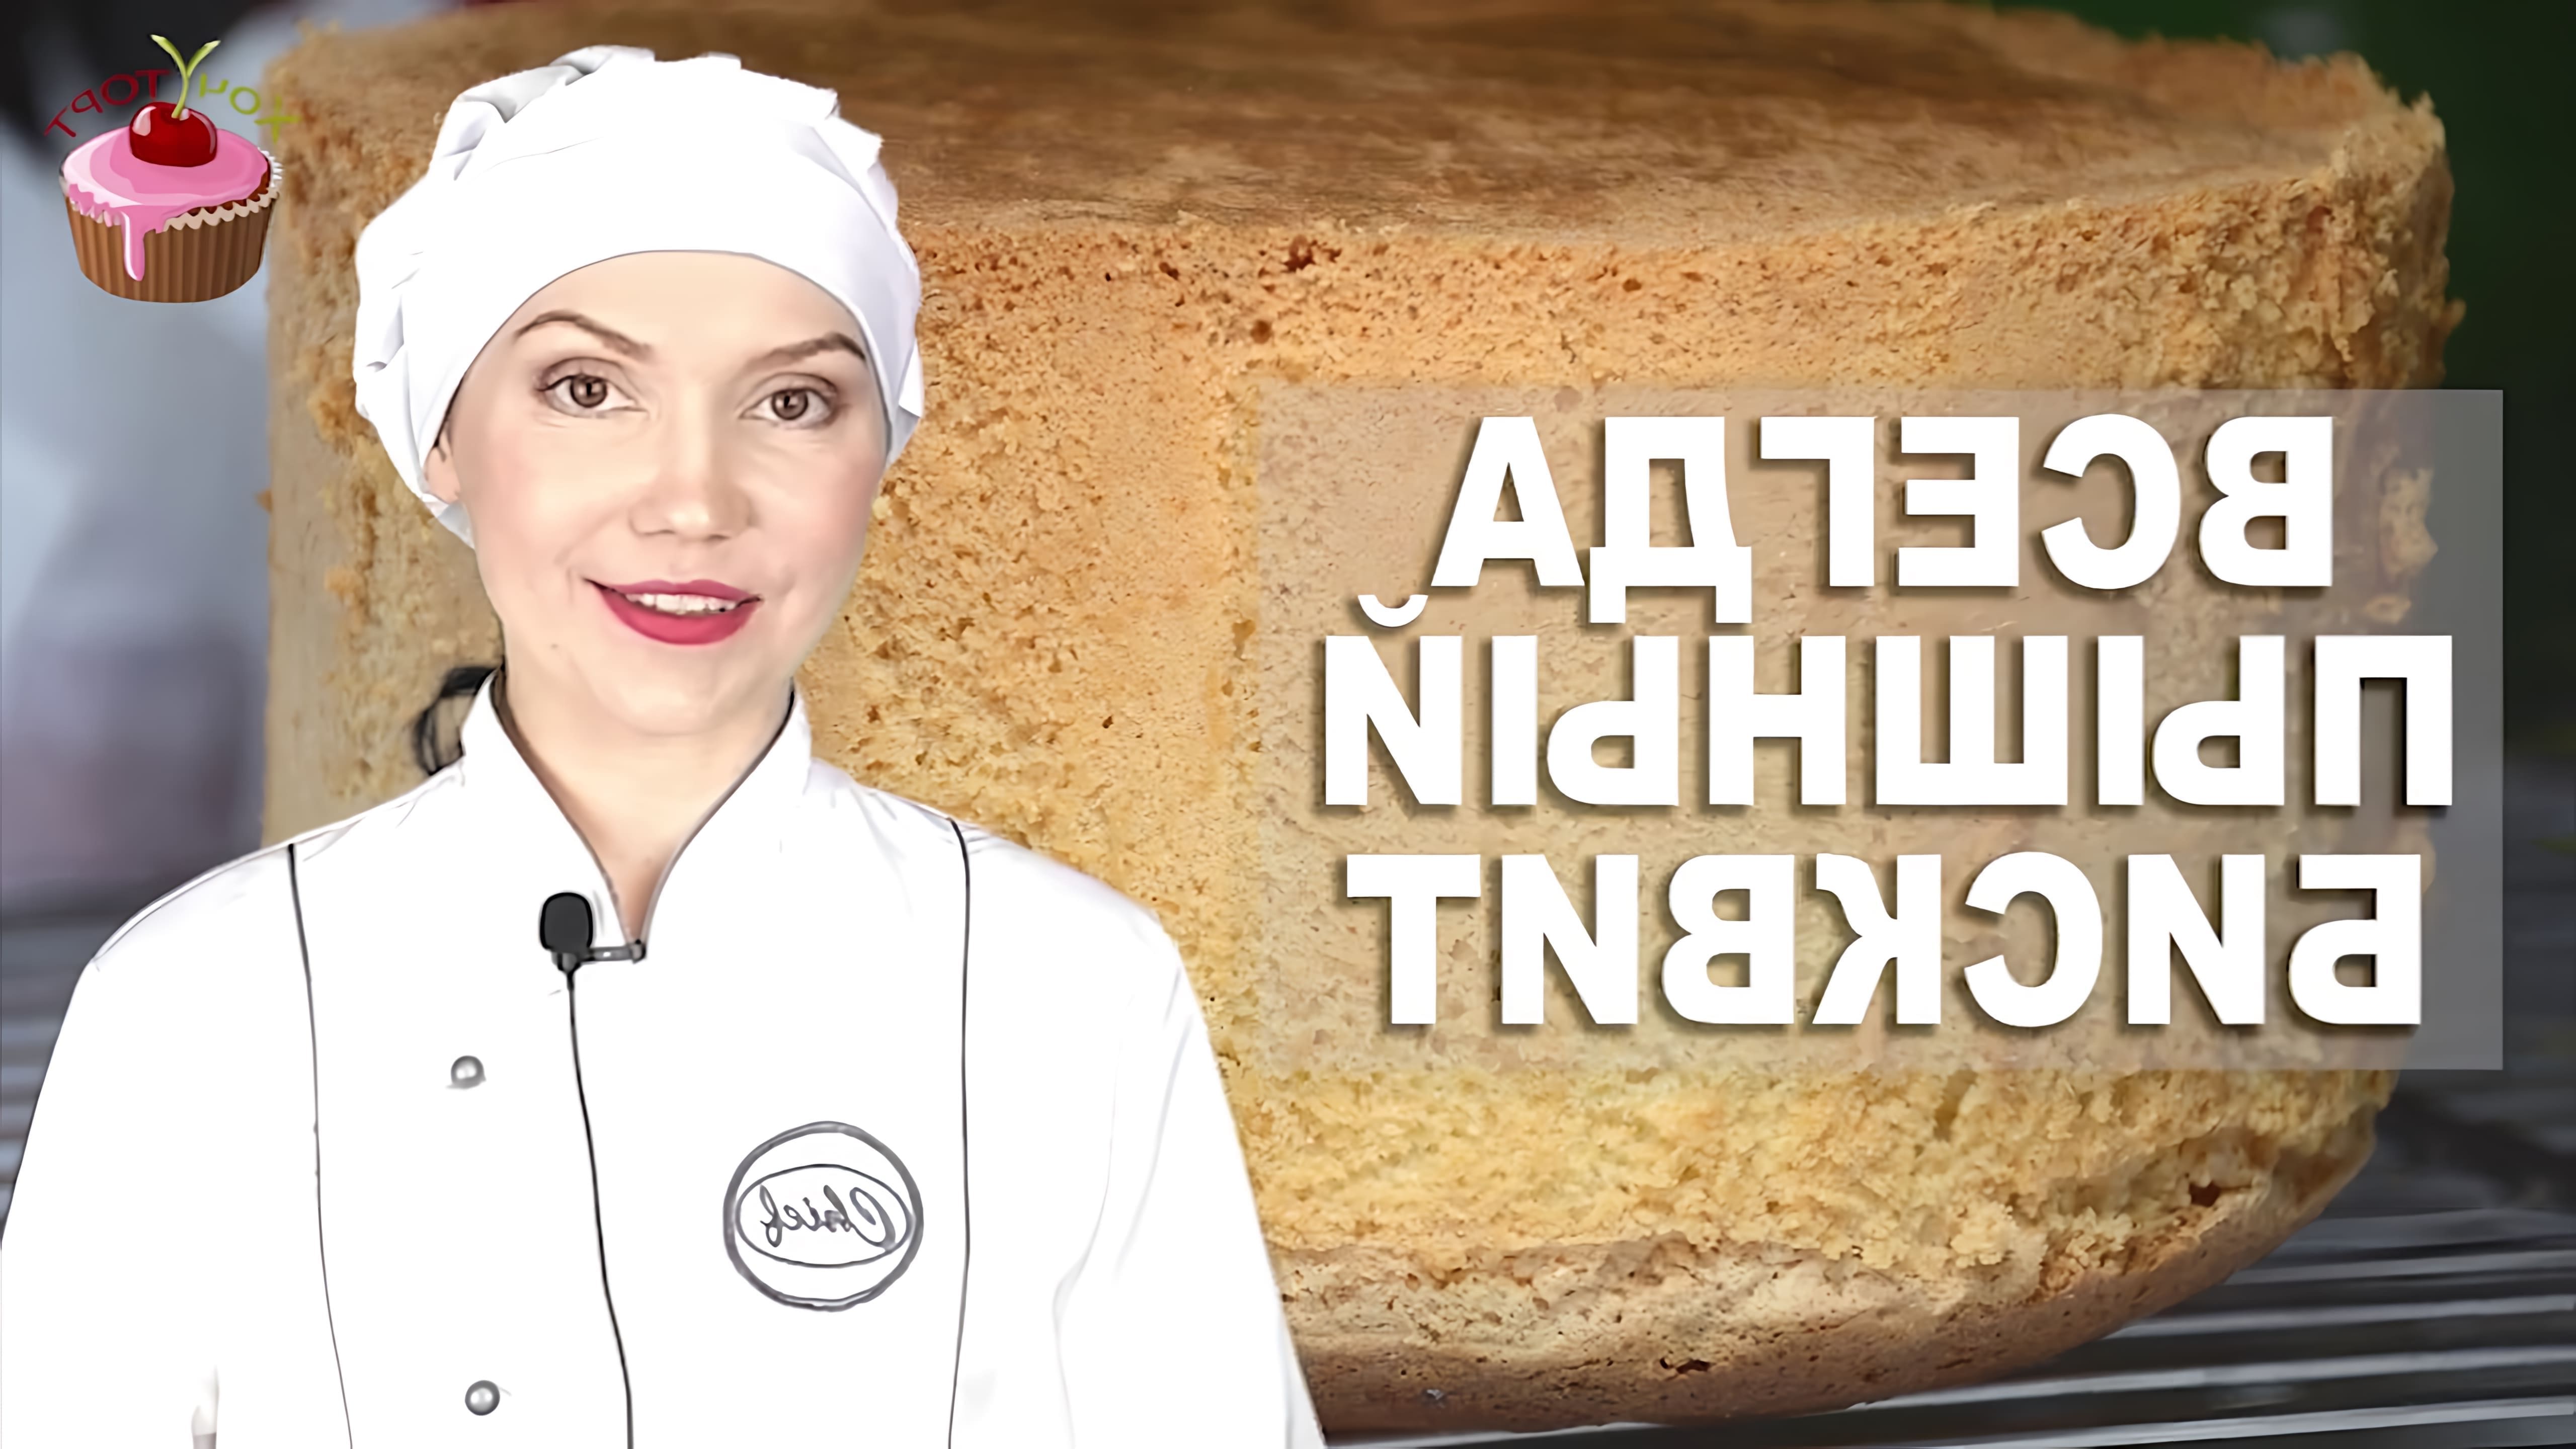 В данном видео демонстрируется процесс приготовления ванильного бисквита для торта